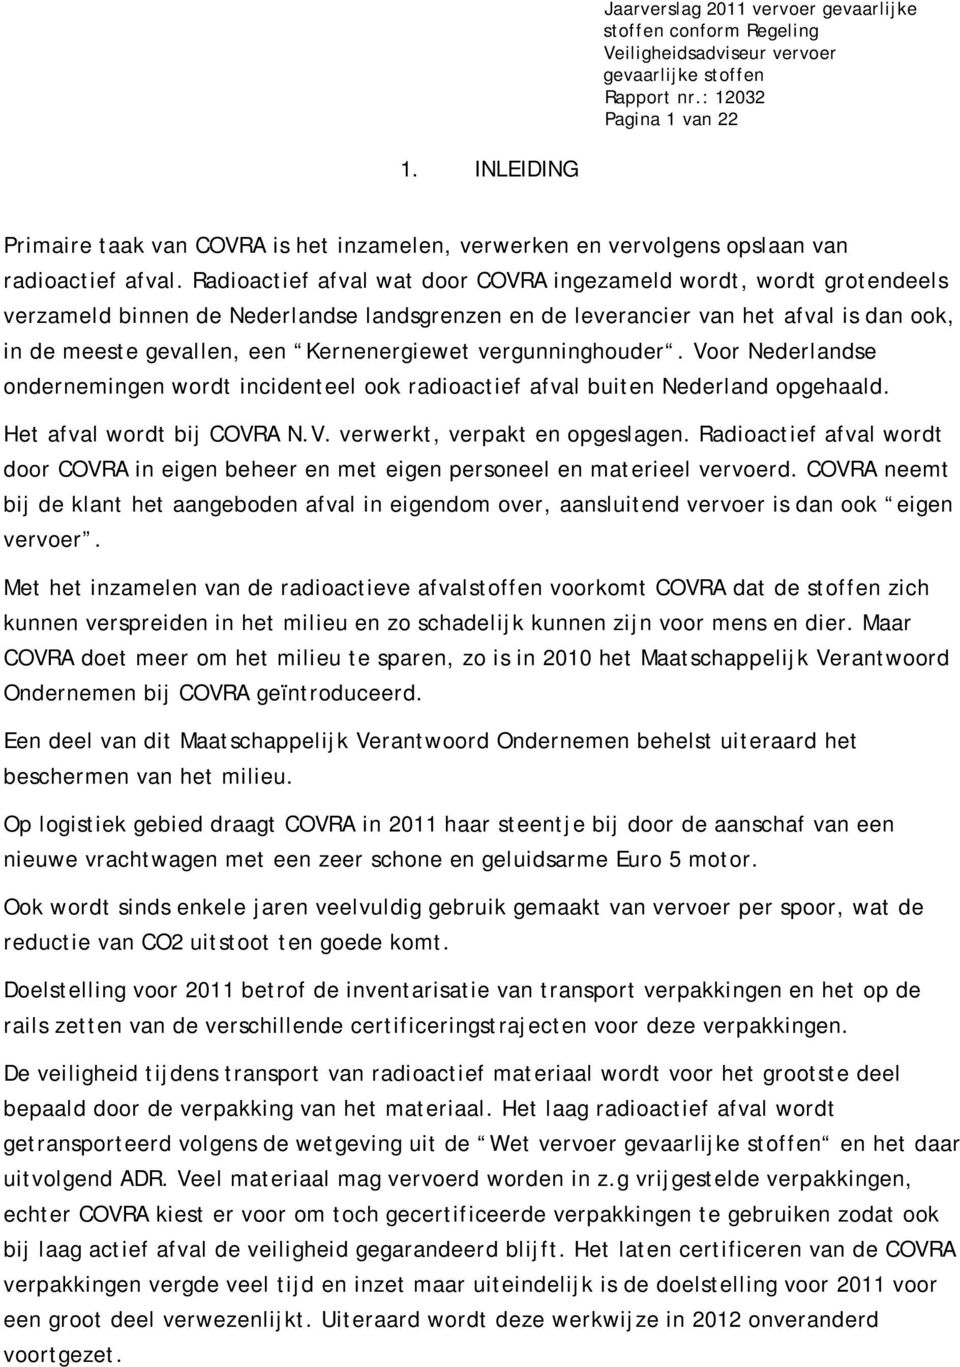 vergunninghouder. Voor Nederlandse ondernemingen wordt incidenteel ook radioactief afval buiten Nederland opgehaald. Het afval wordt bij COVRA N.V. verwerkt, verpakt en opgeslagen.